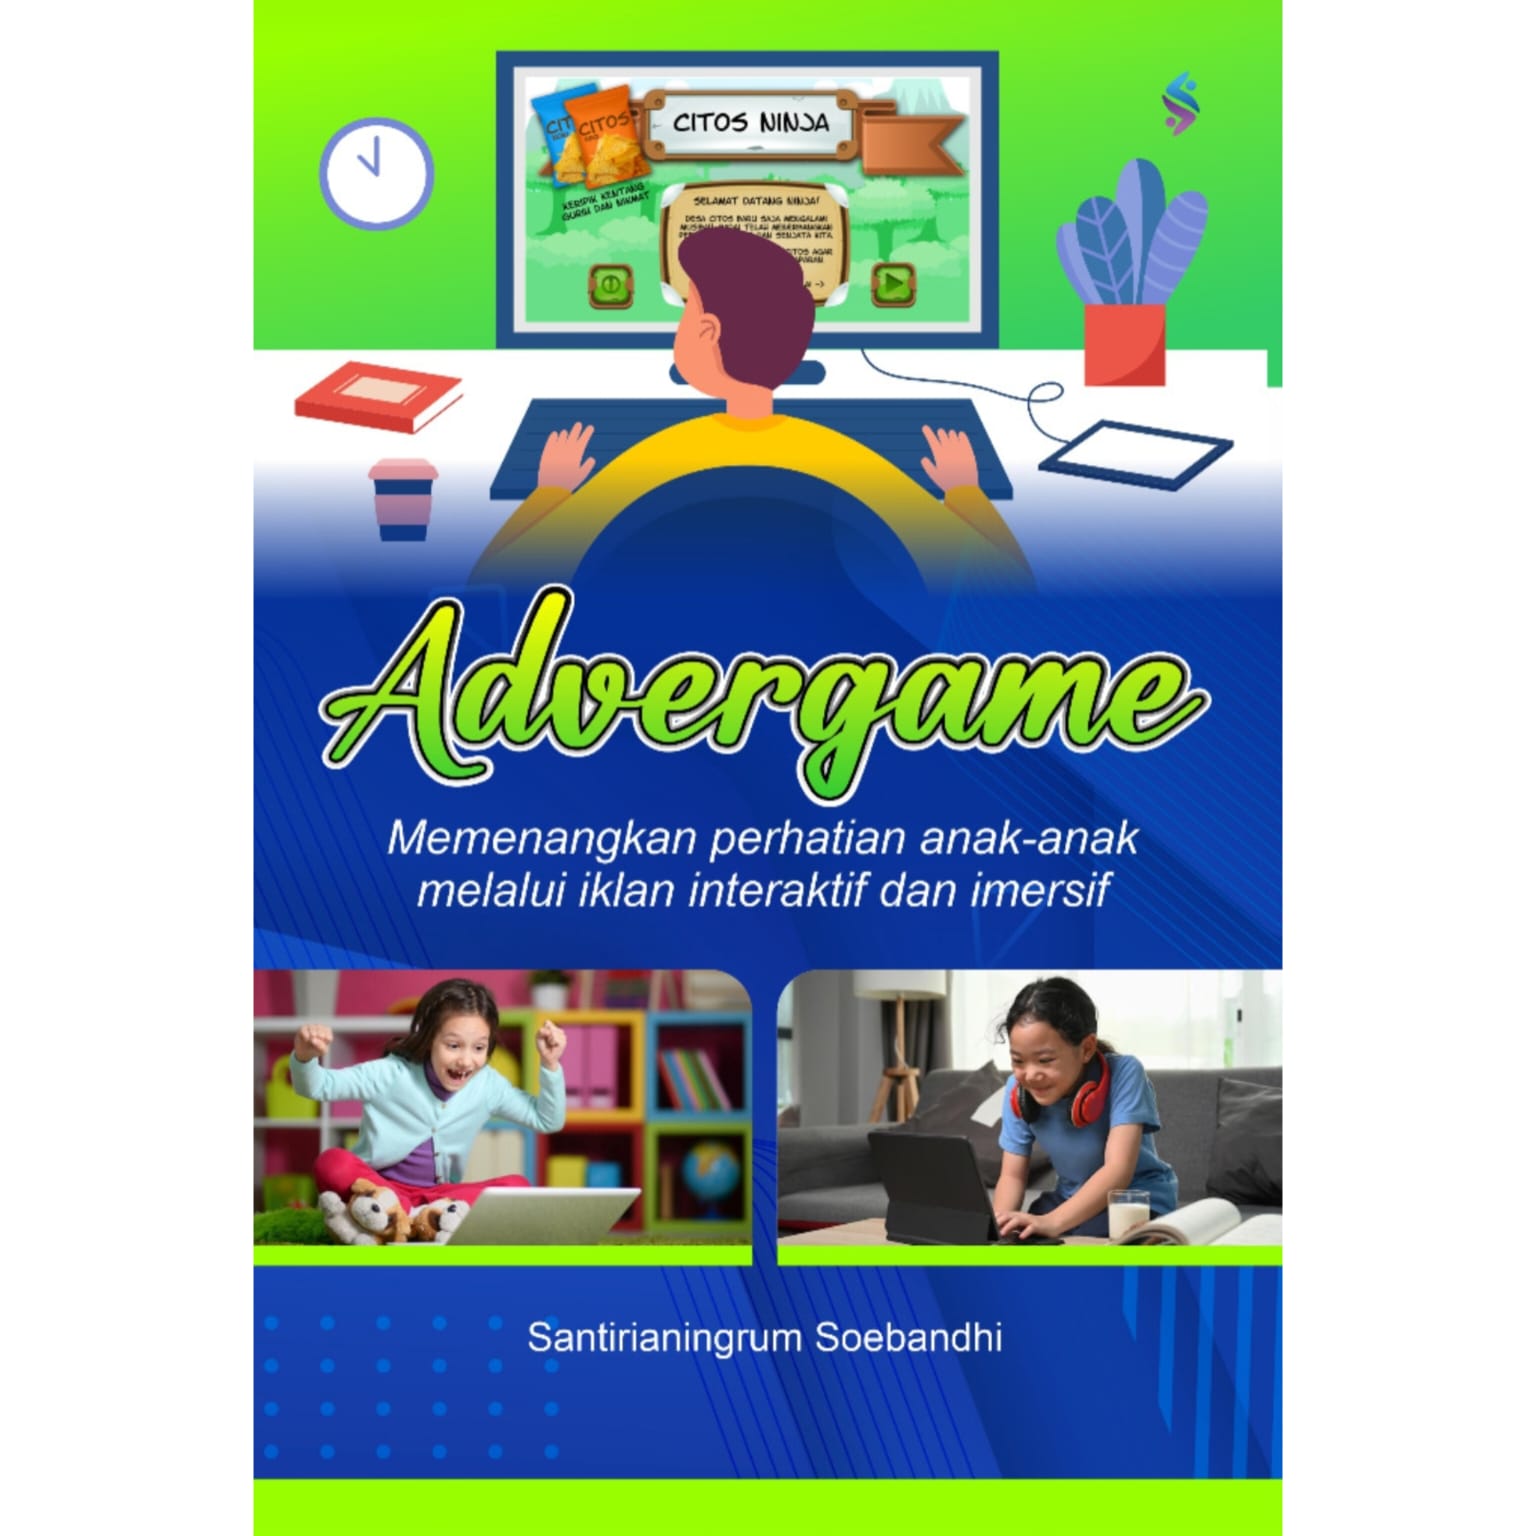 Advergame Memenangkan Perhatian Anak-Anak Melalui Iklan Interaktif dan Imersif